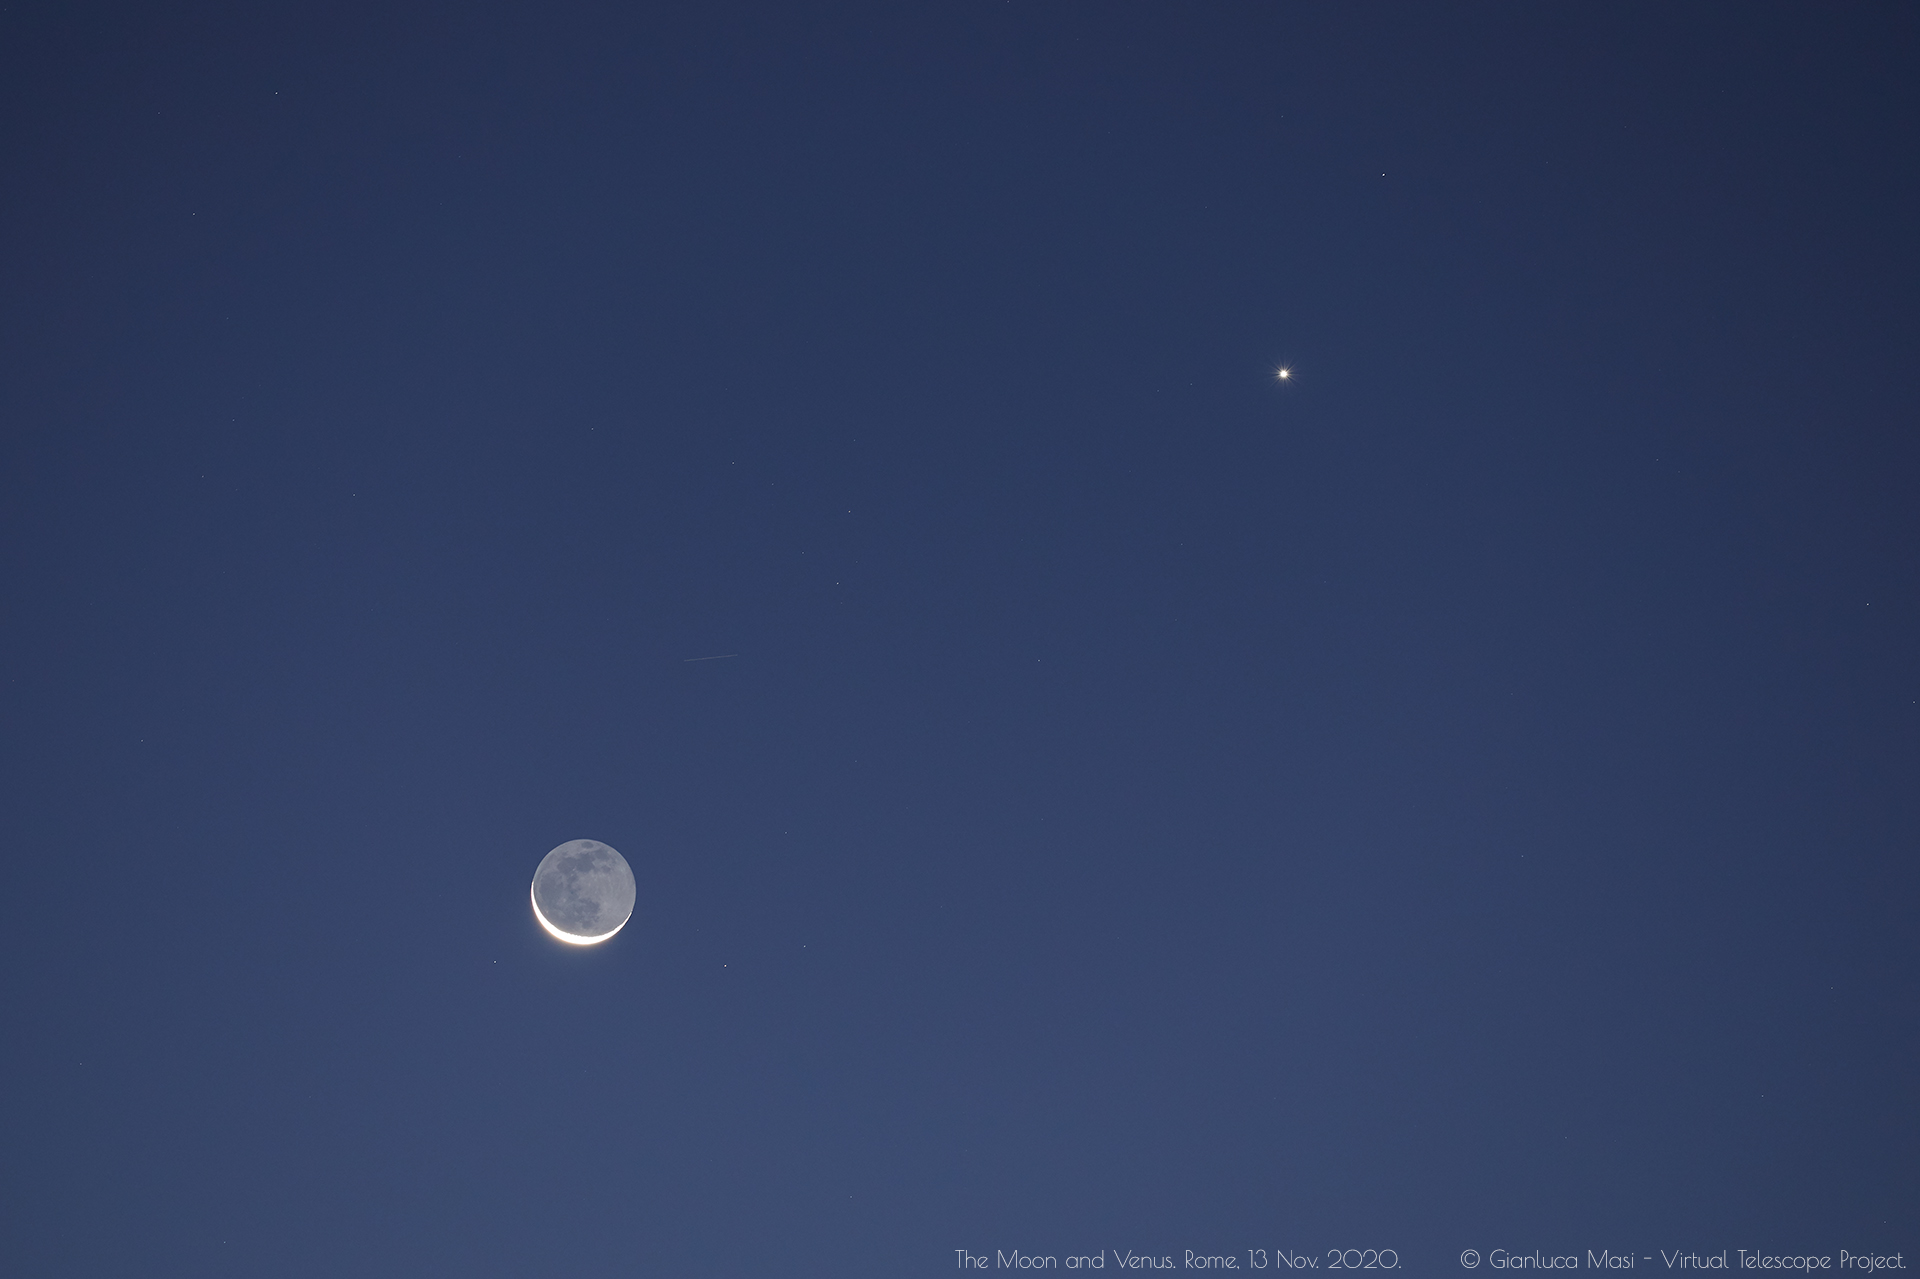 The Moon and Venus. 13 Nov. 2020.